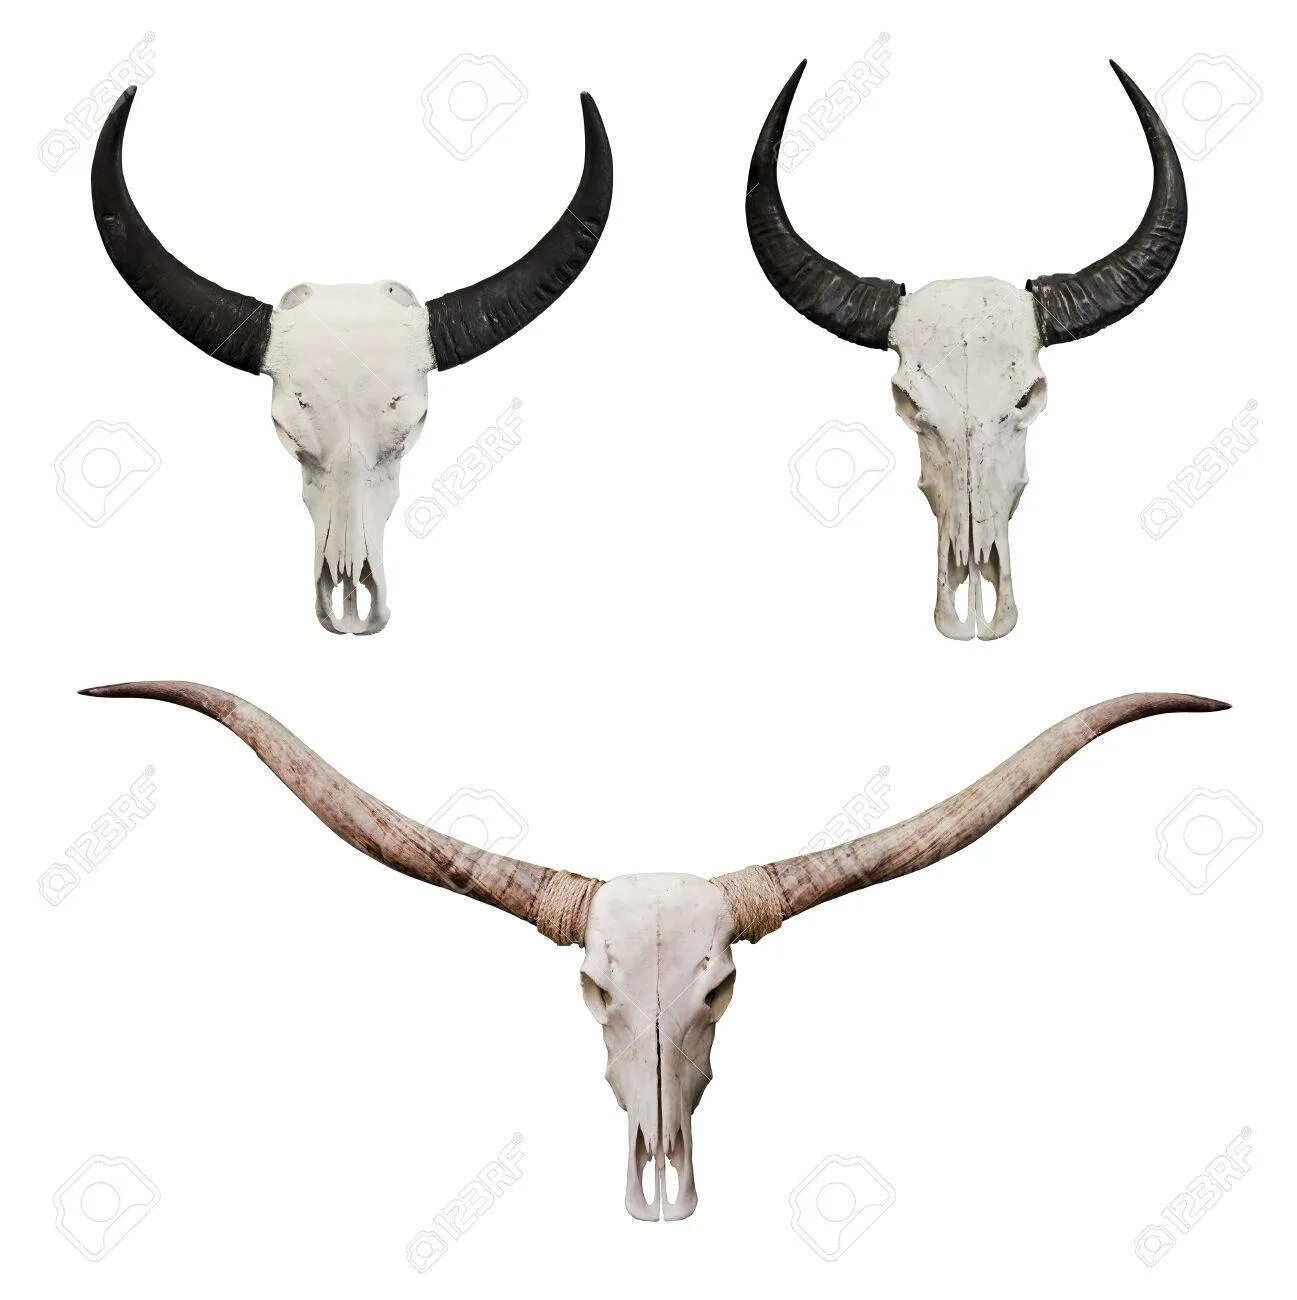 Череп быка. Рога быка. Рога буйвола на стену. Череп быка с завитыми рогами.